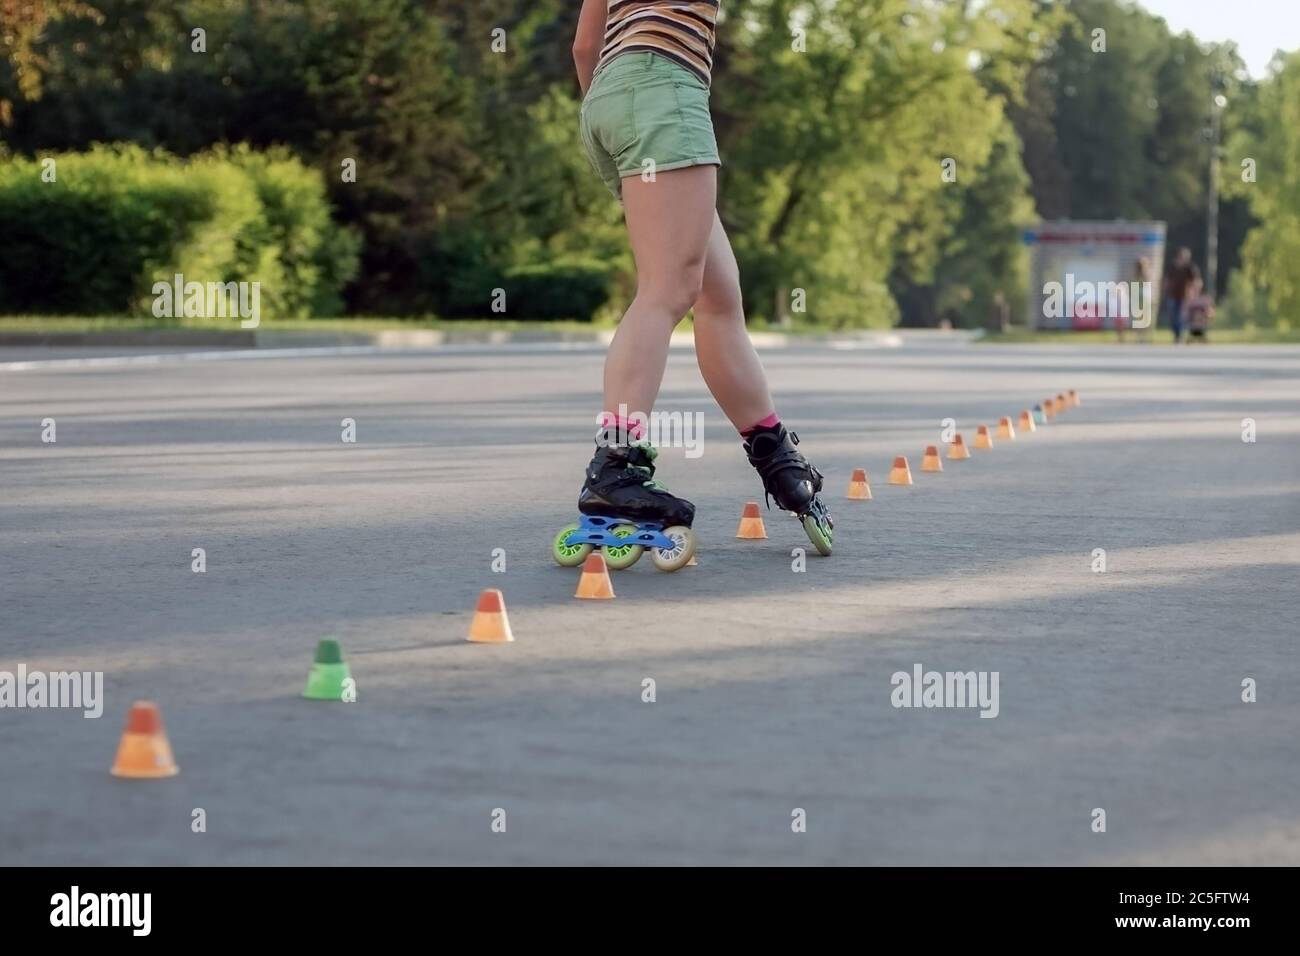 Rollschuhe Frau in Shorts Training im Park, starke Beine in Bewegung  Stockfotografie - Alamy